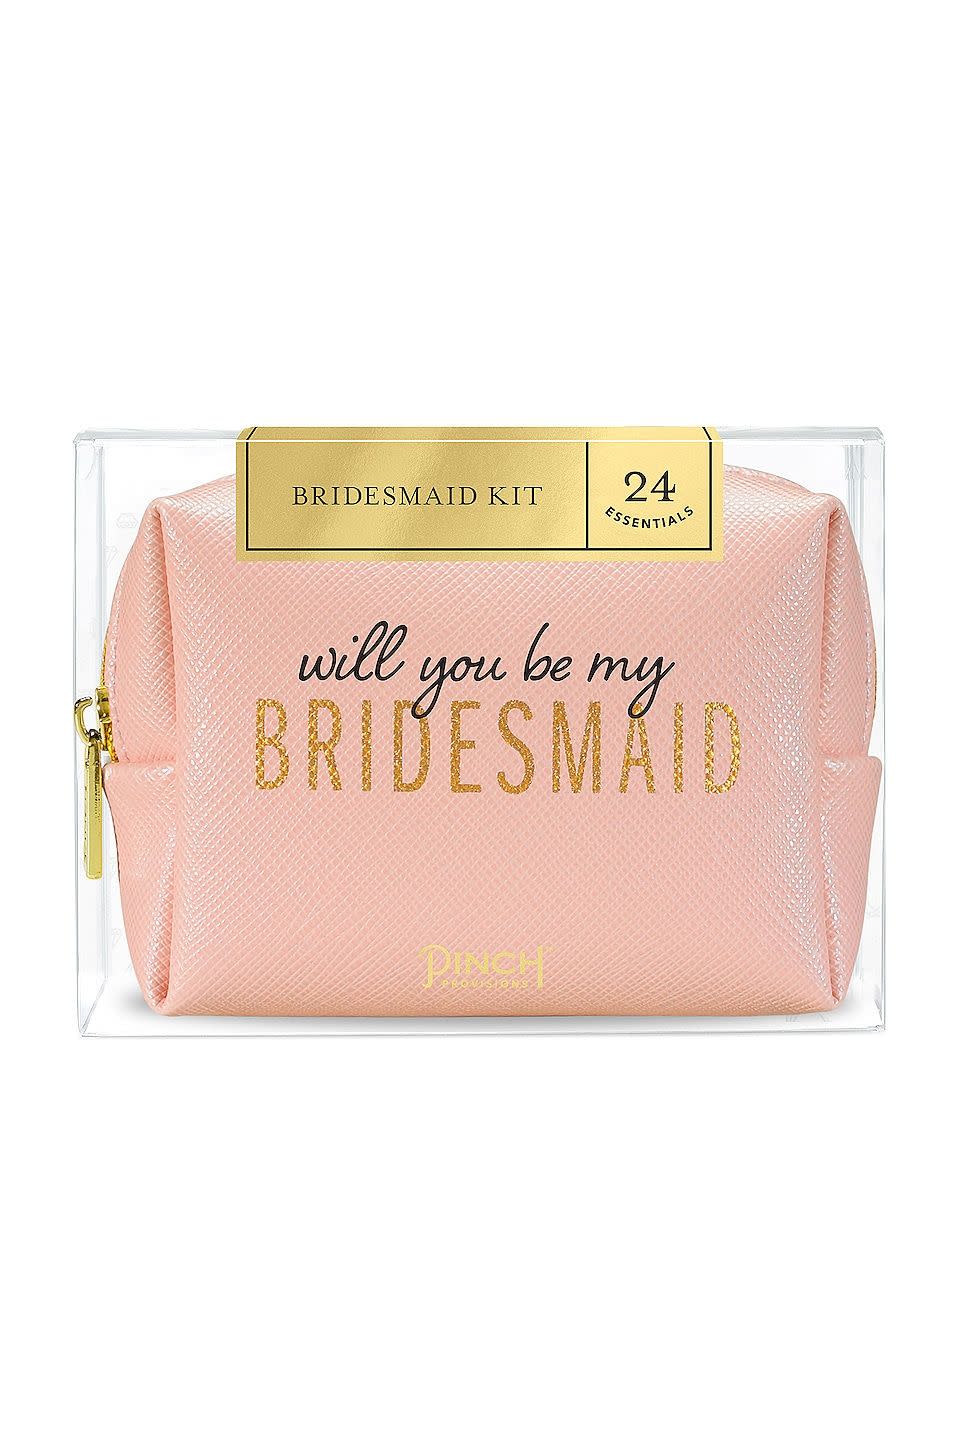 13) Be My Bridesmaid Kit